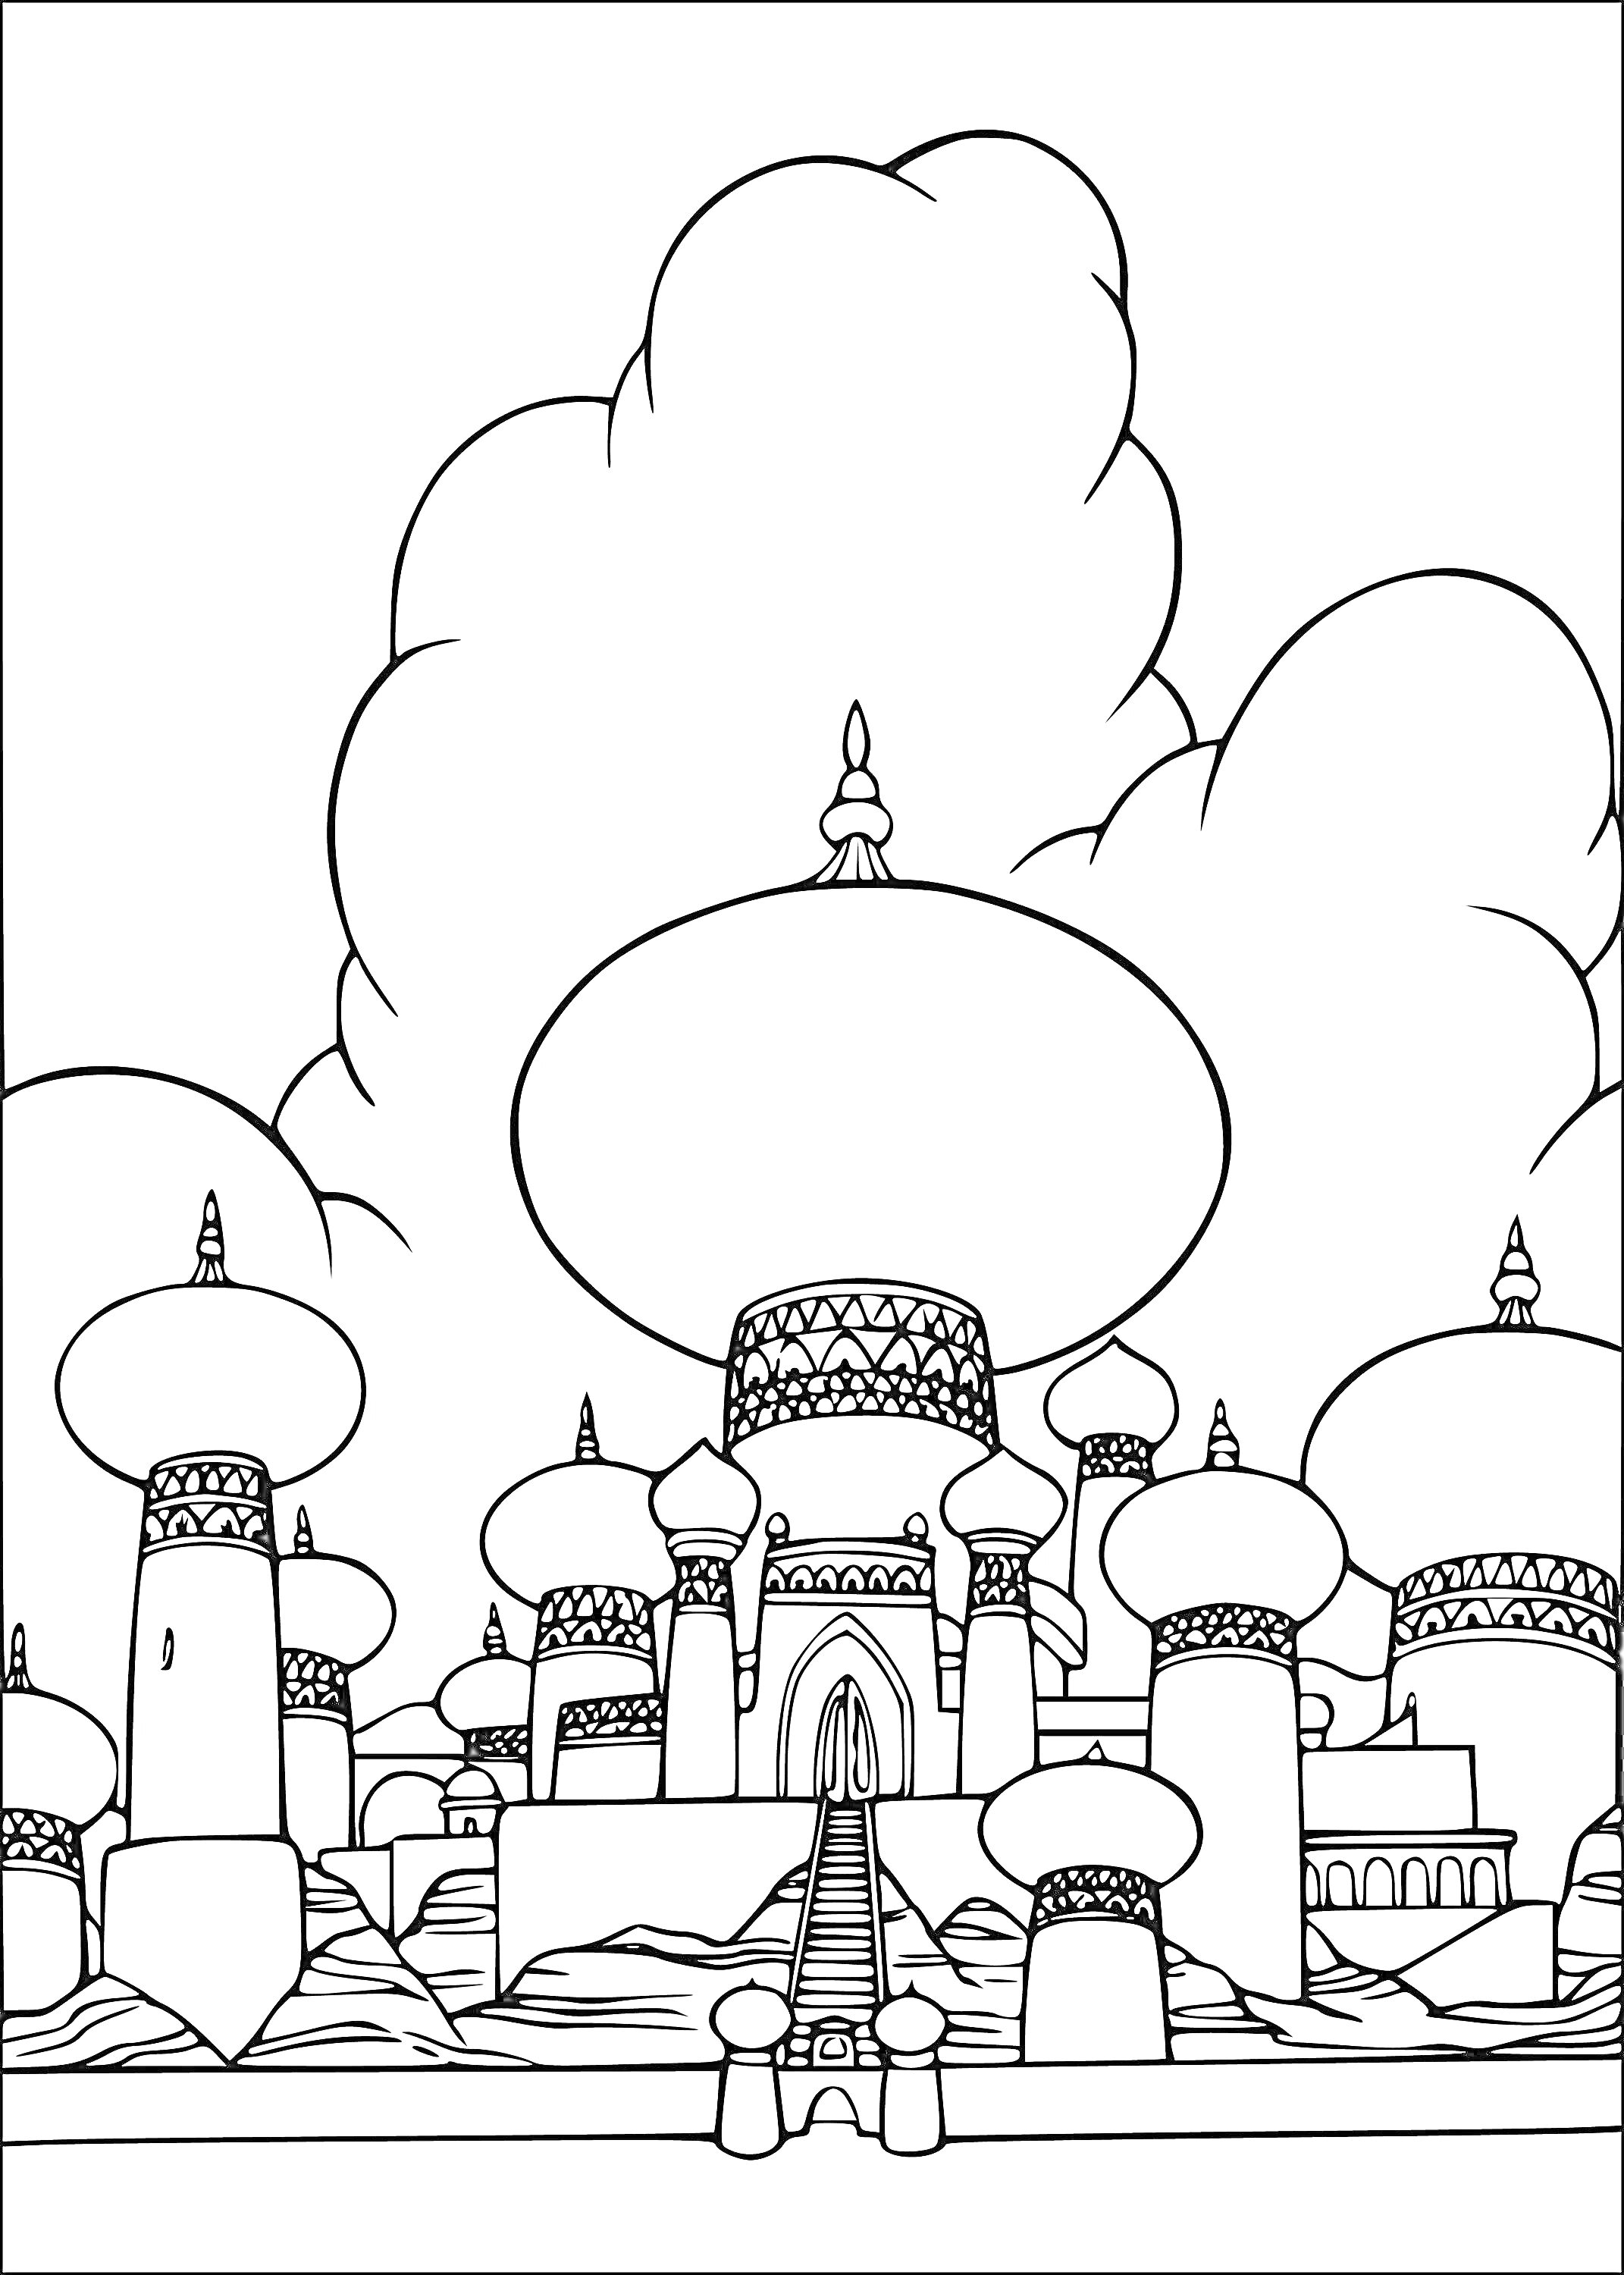 Раскраска Величественный дворец в арабскую ночь с множеством куполов и башен